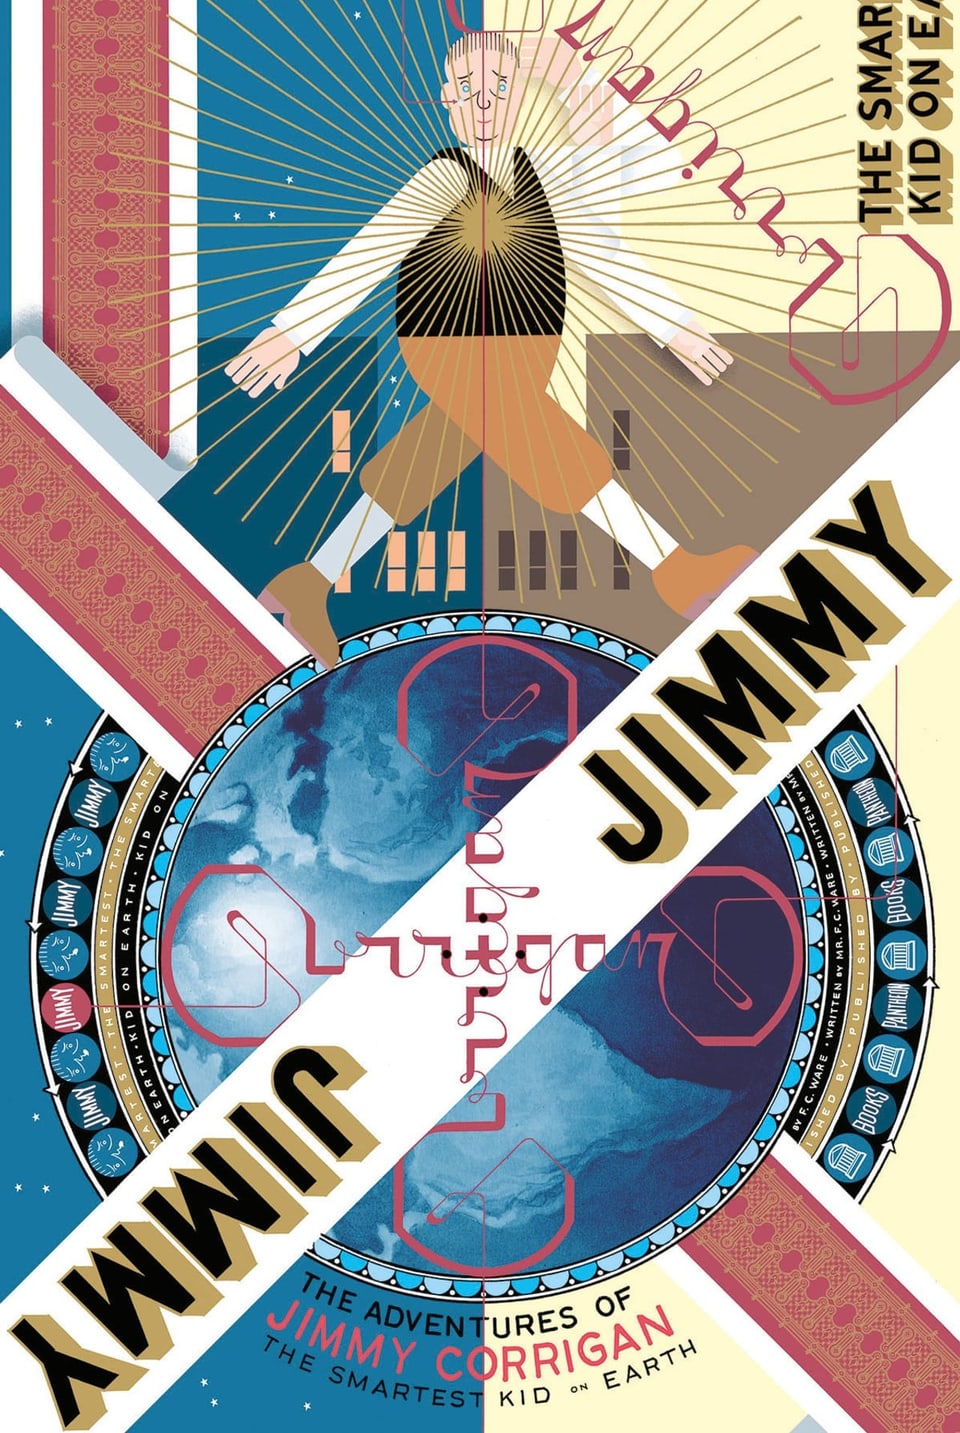 Buchcover mit zwei mal «Jimmy» auf dem Titel sowie einer Comicfigur, die auf einer abstrahierten Weltkugel geht.